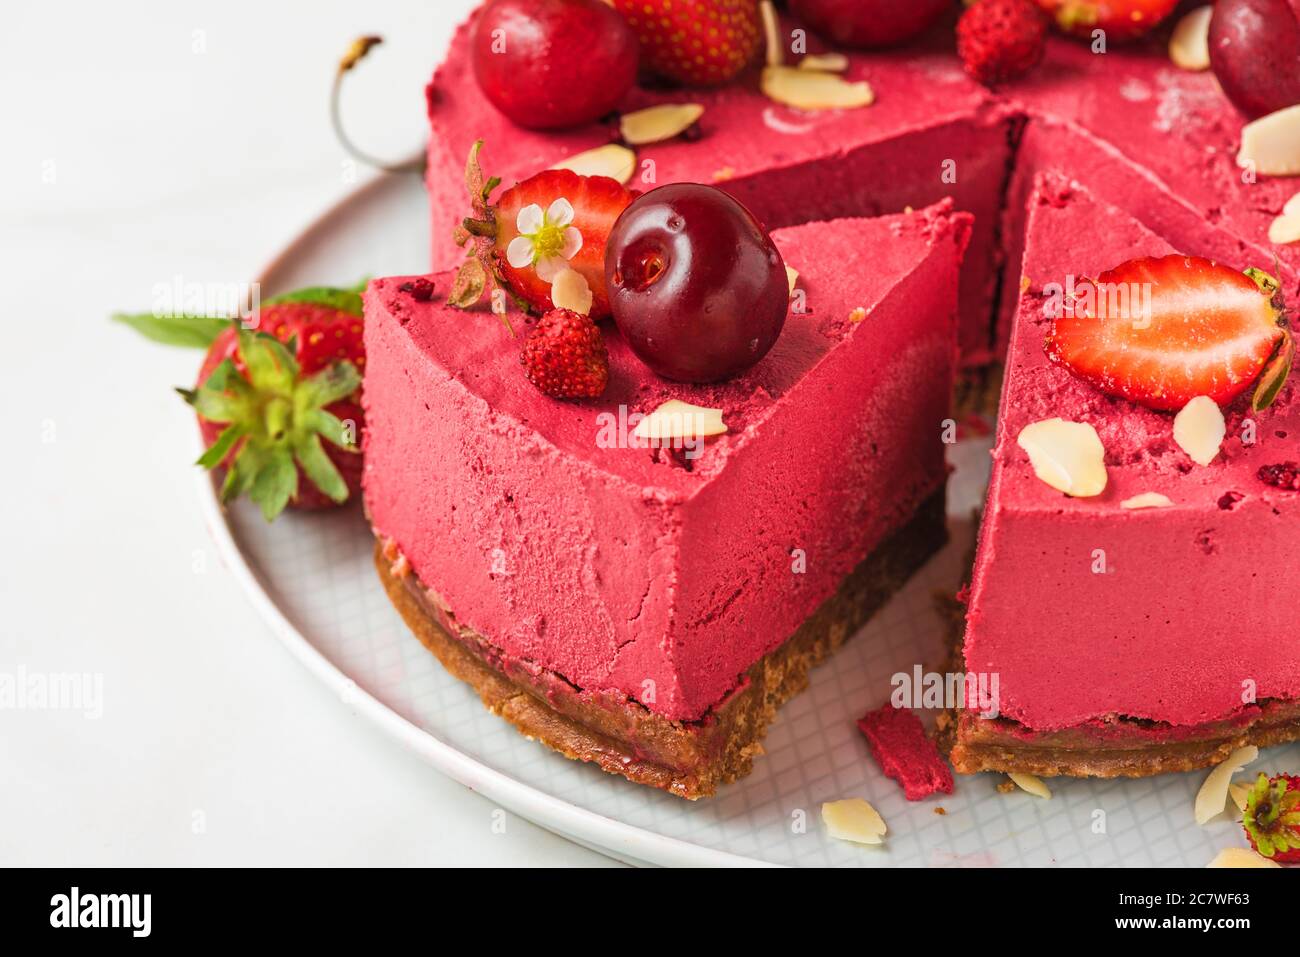 Stück Beeren veganer Käsekuchen oder Kuchen mit frischen Kirschen und Erdbeeren auf einem Teller. Nahaufnahme. Gesundes veganes Dessertgericht Stockfoto